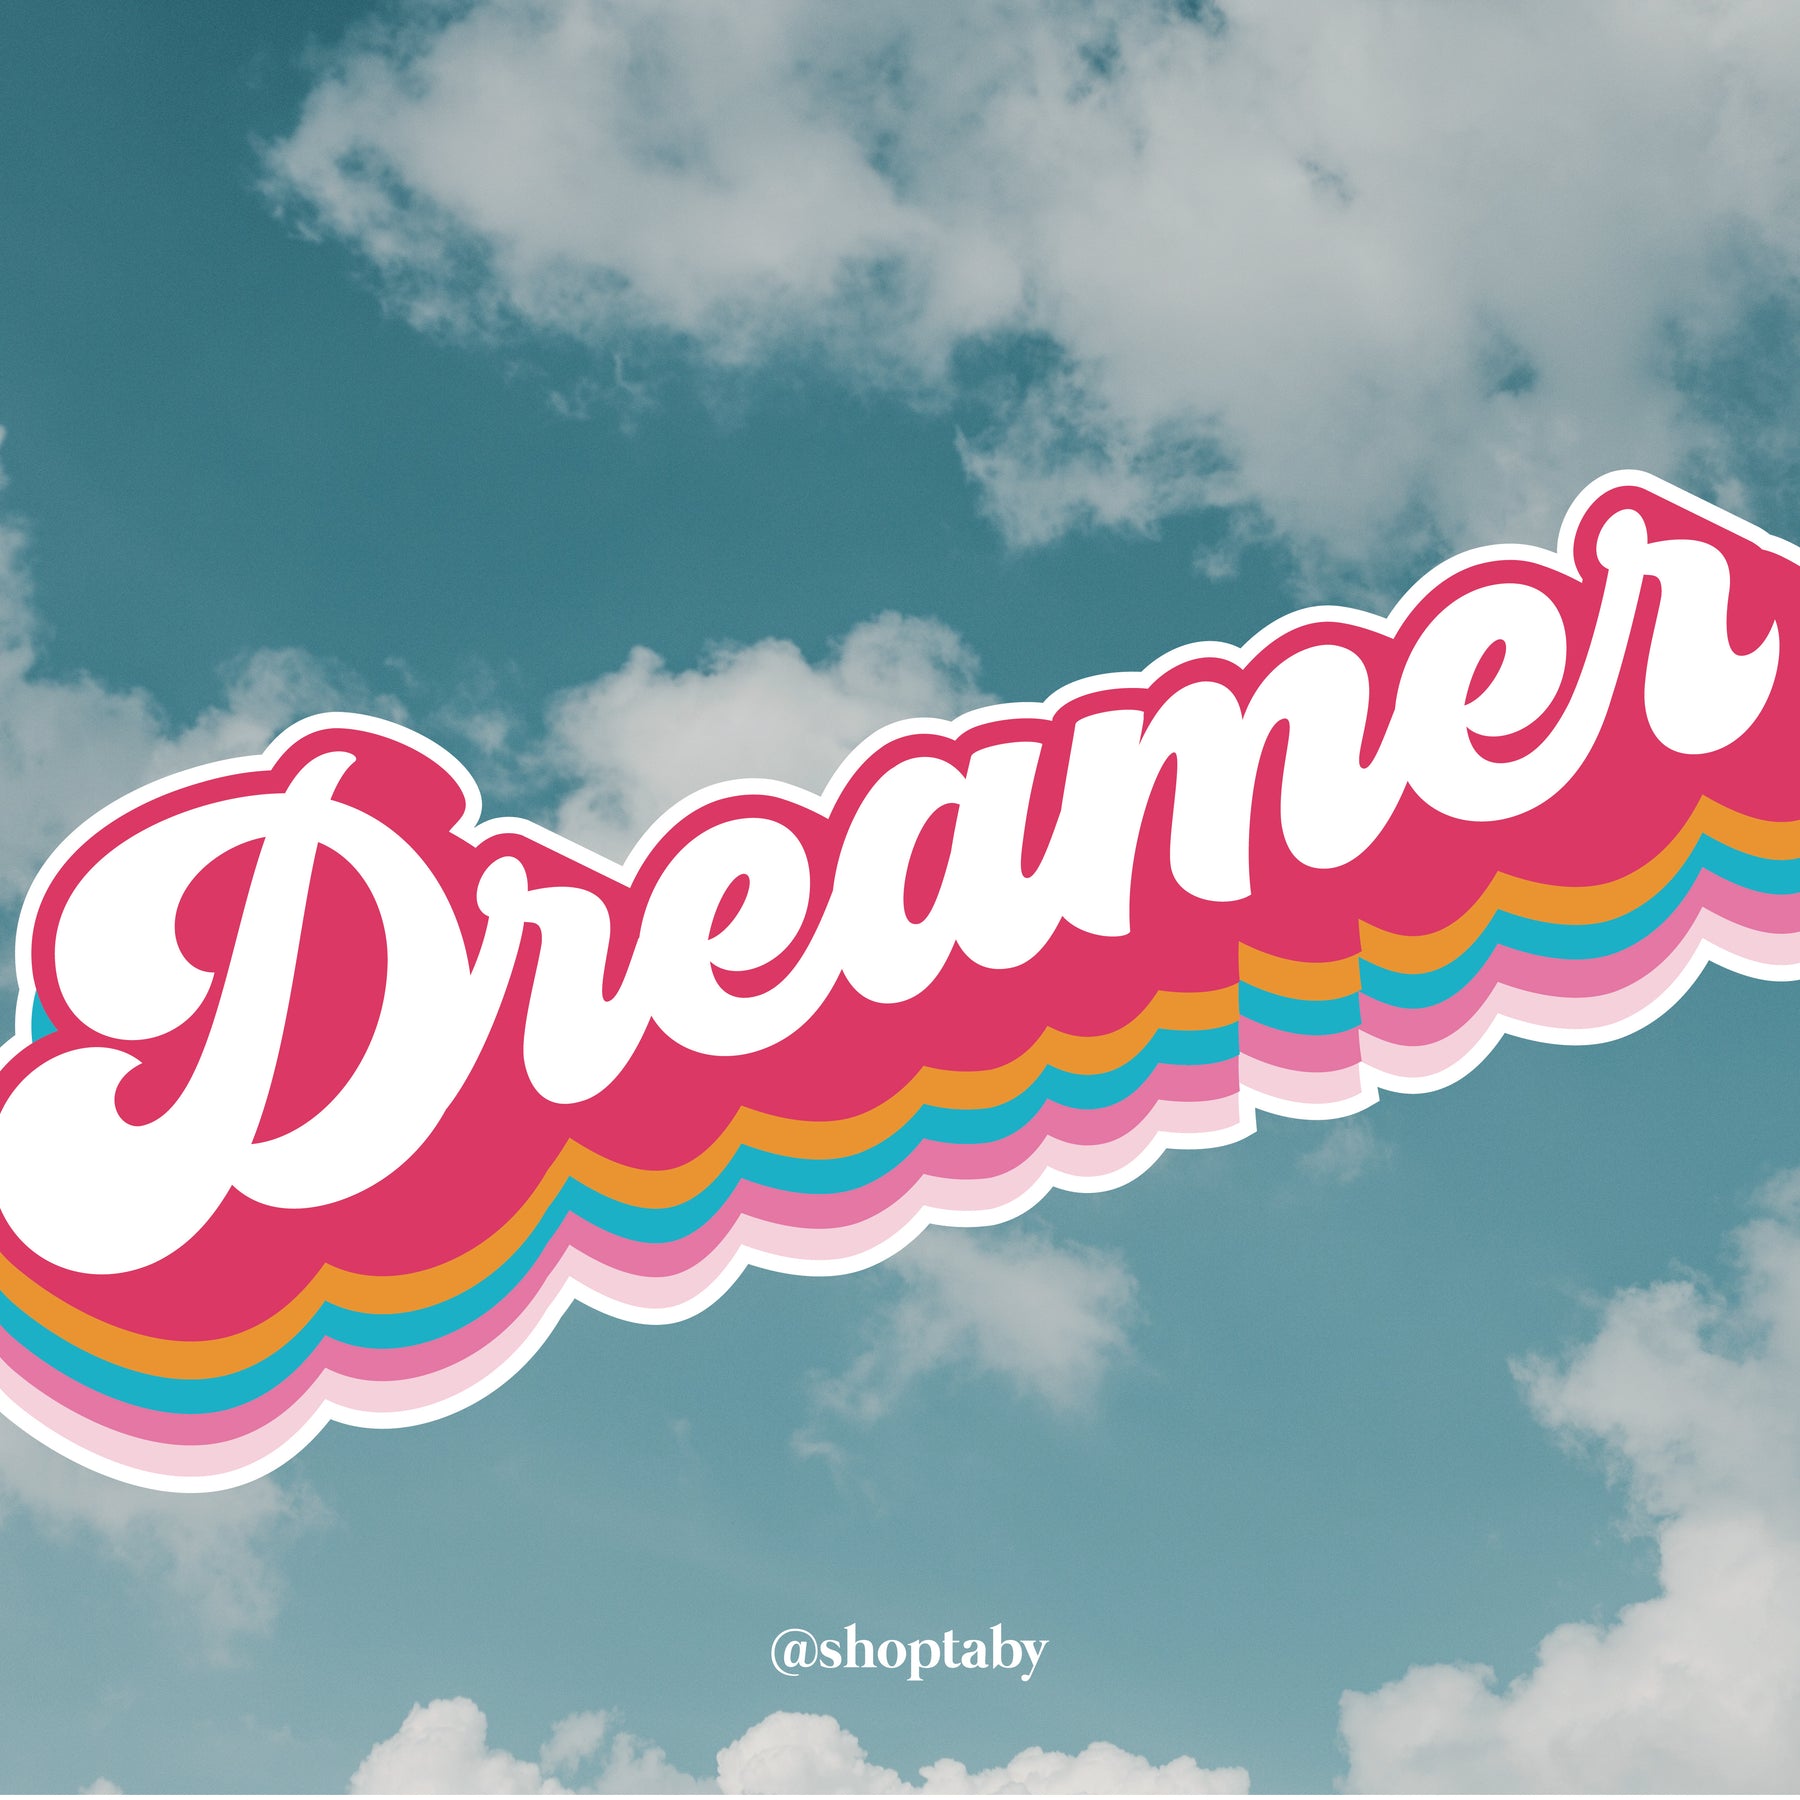 Dreamer Sticker Pack